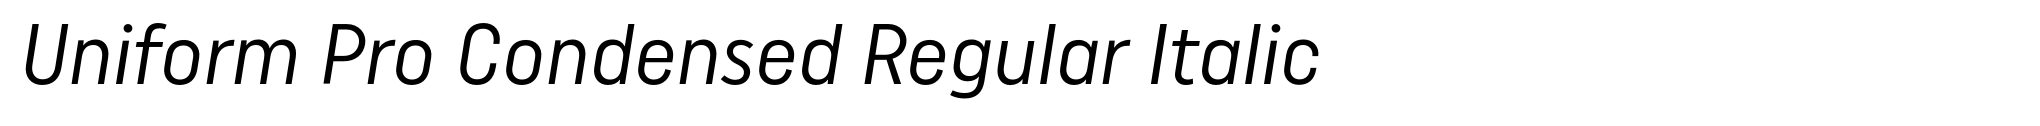 Uniform Pro Condensed Regular Italic image